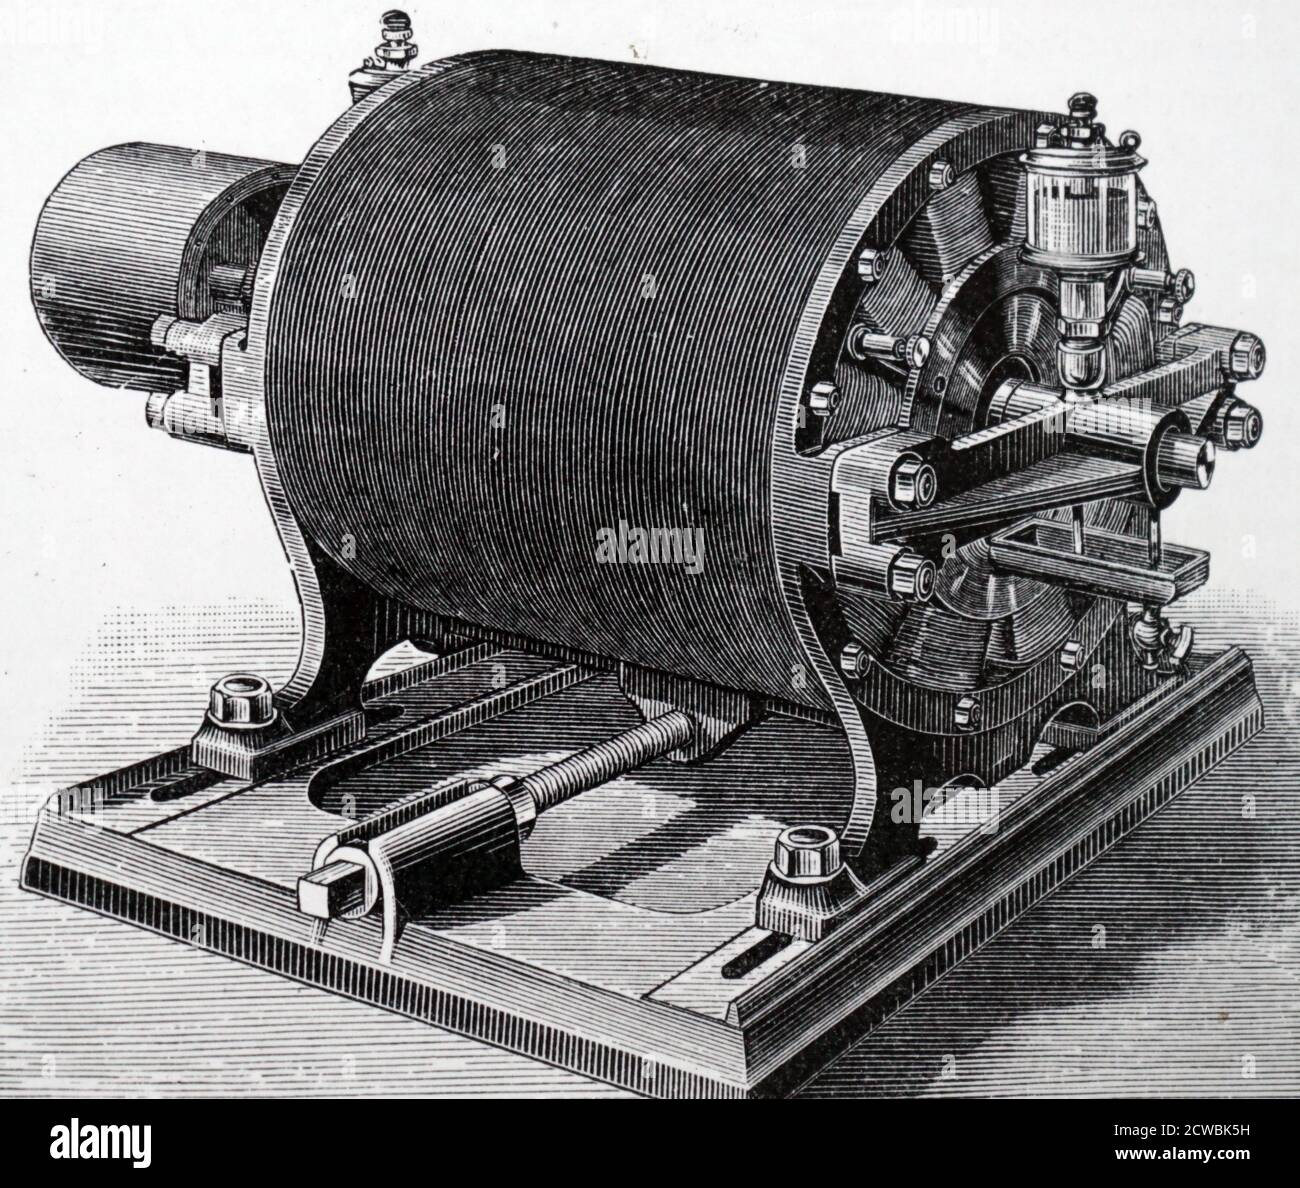 Incisione raffigurante il motore rotativo a induzione Tesla (1885) che ha reso possibile l'aria condizionata e la distribuzione su larga scala dell'elettricità. Cilindro di conduttori a barra circondato da bobine elettromagnetiche. Il motore utilizzava la scoperta dell'induzione elettromagnetica da parte di Faraday (1832). Foto Stock